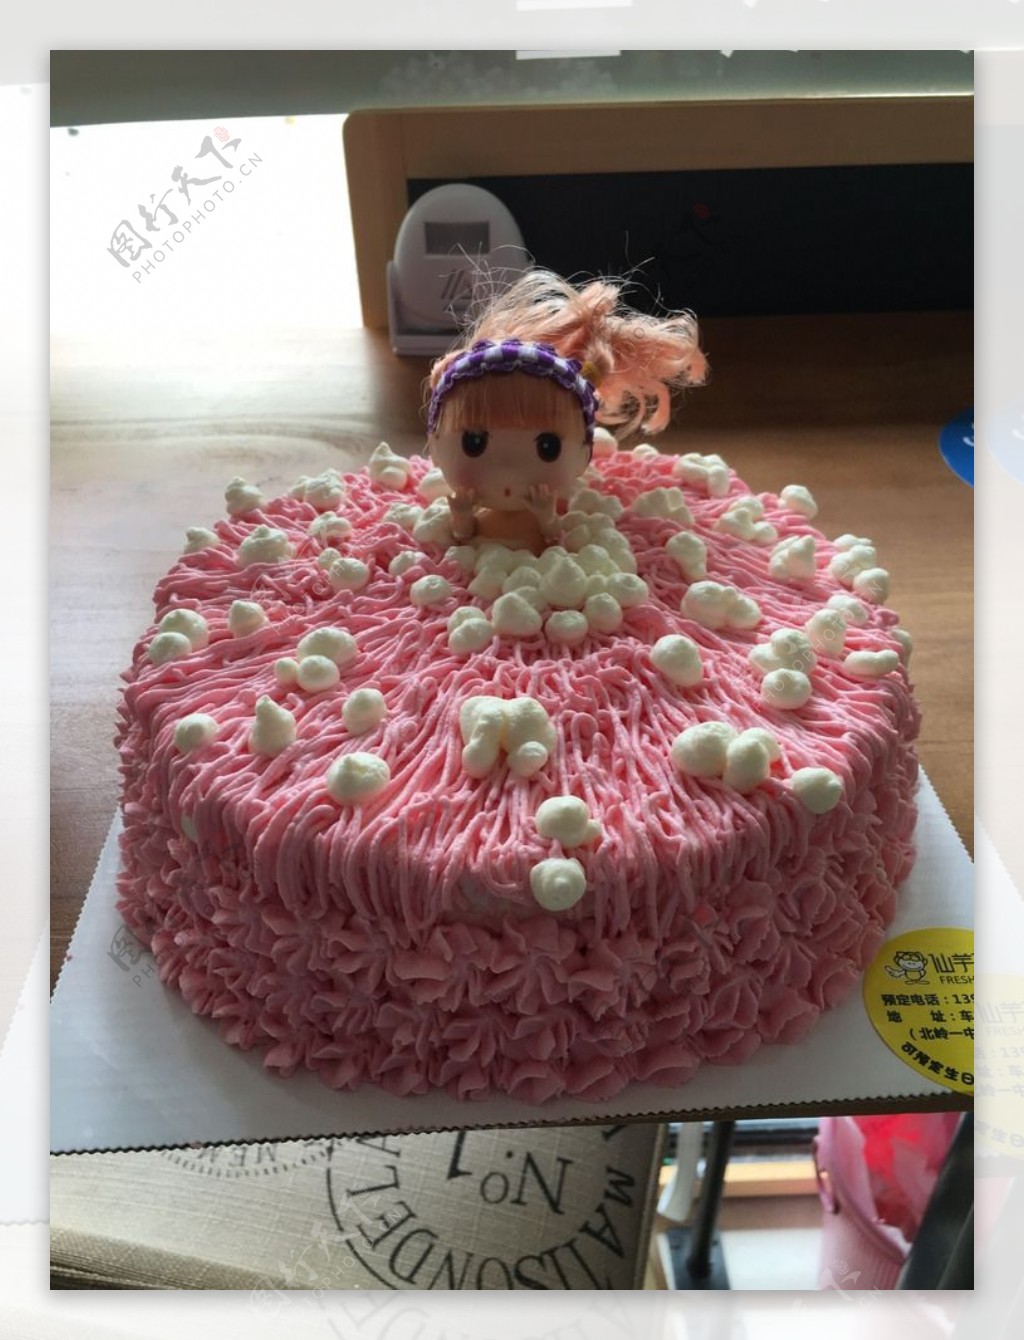 乔伊丝乐厨房: 芭比娃娃生日蛋糕